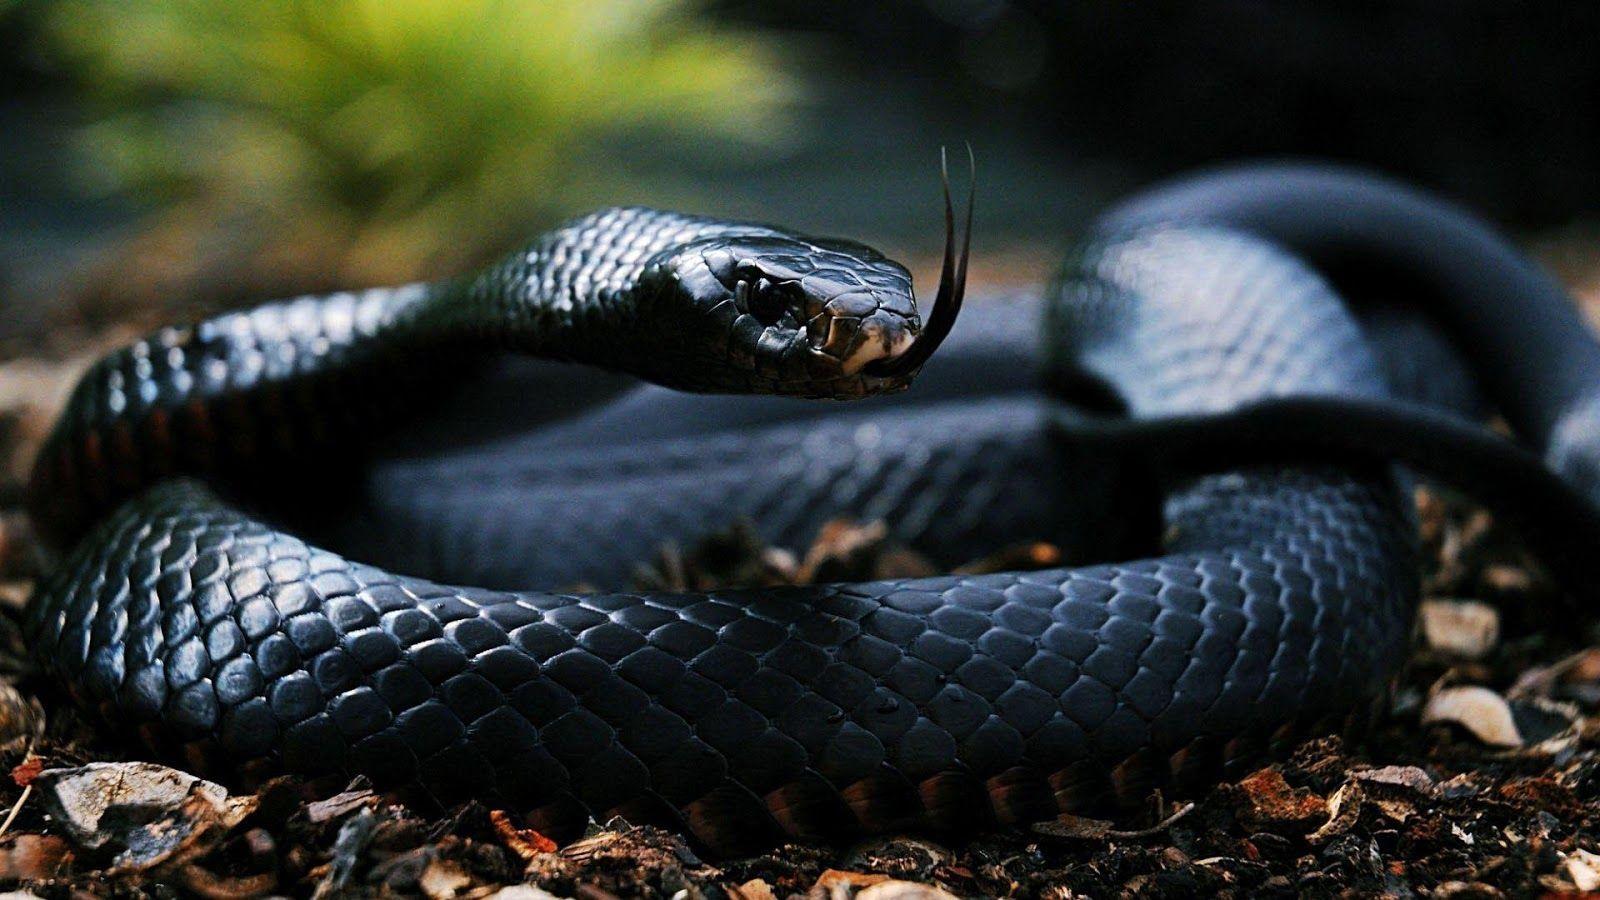 Black snake Wallpaper Mobile Pics × Black Snake. snakes